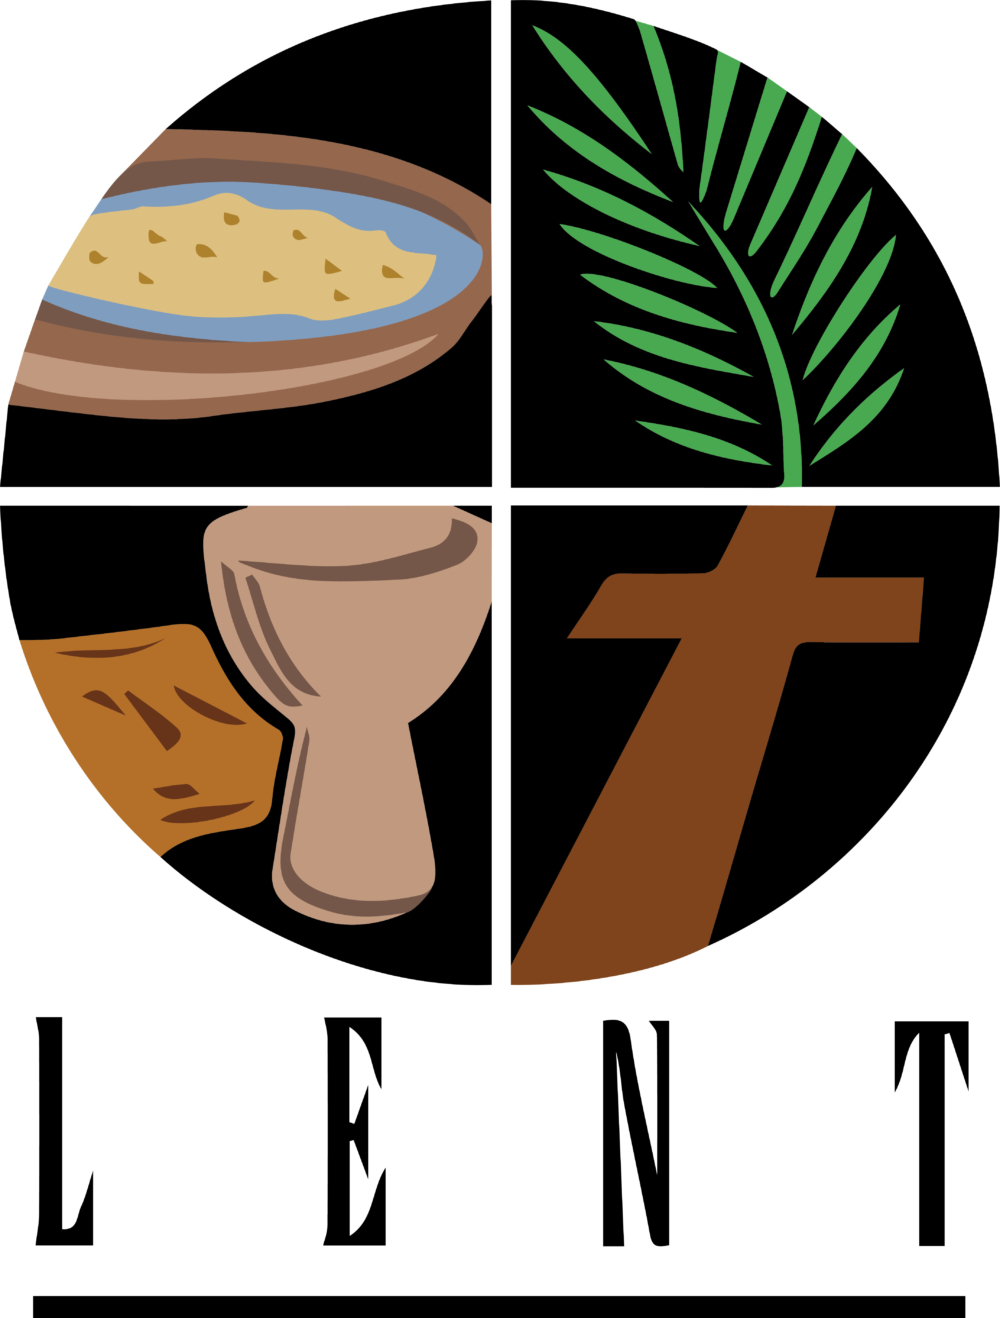 Lent Image